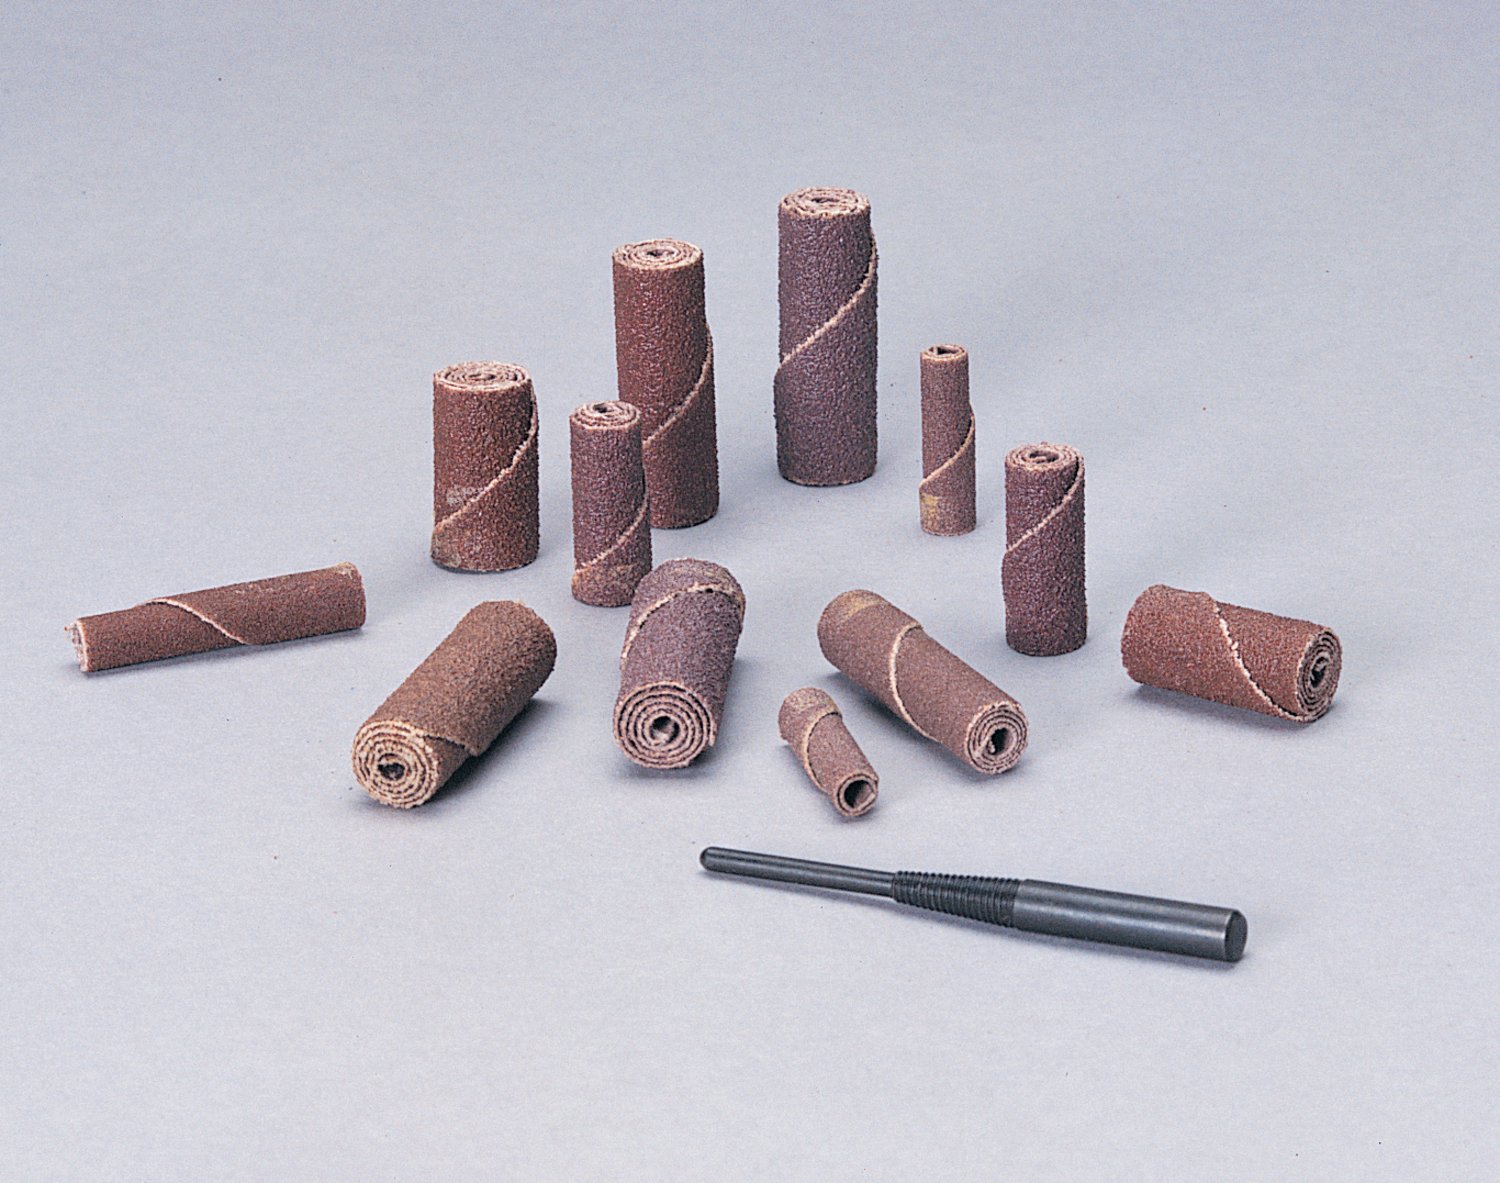 7010368581 - Standard Abrasives Zirconia Cartridge Roll, 727342, CR-ST, 60, 1/2 in x
1-1/2 in x 1/8 in, Straight, 100 ea/Case